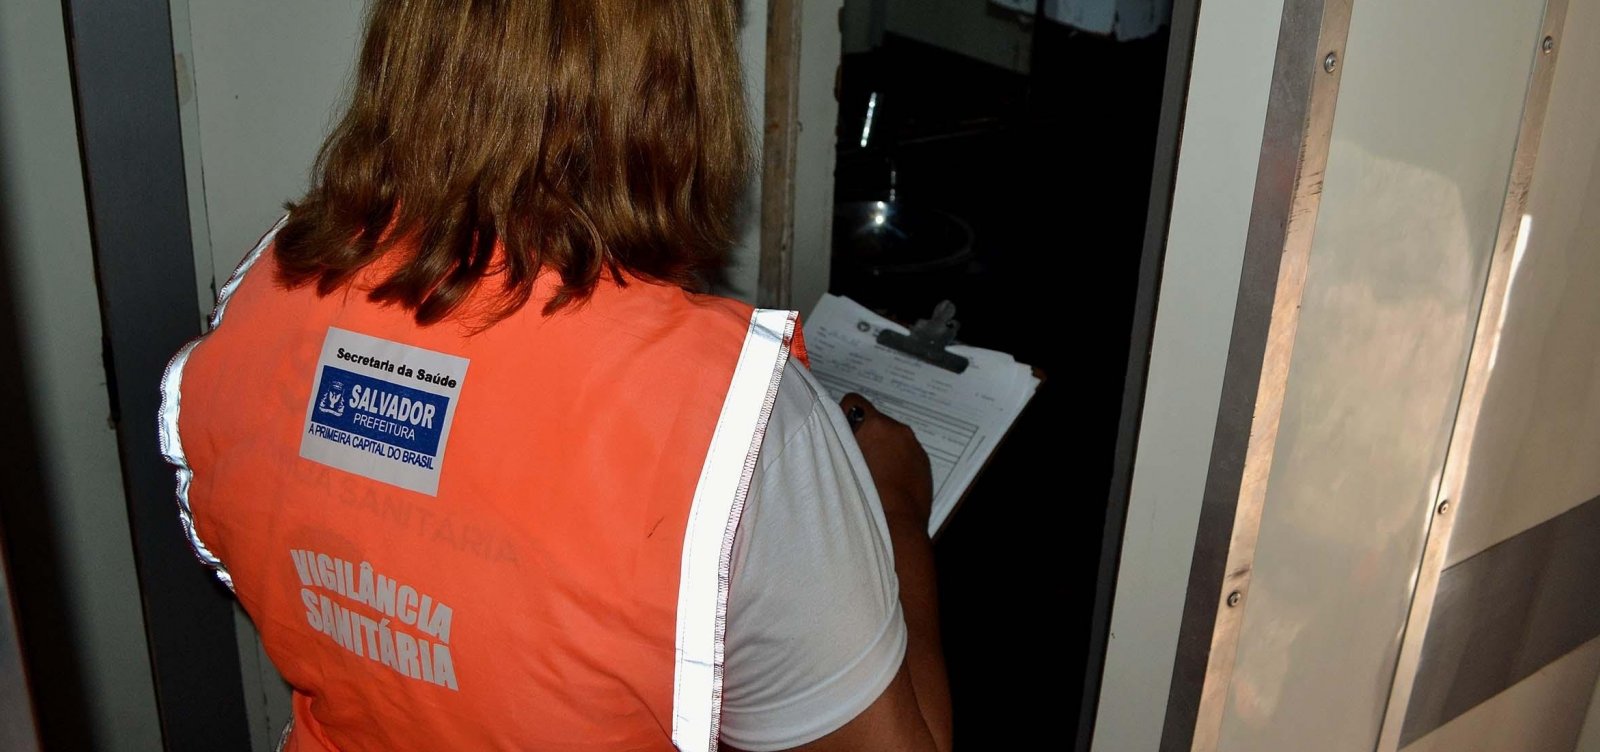 Vigilância Sanitária de Salvador alerta para golpe de suborno utilizando o nome da instituição